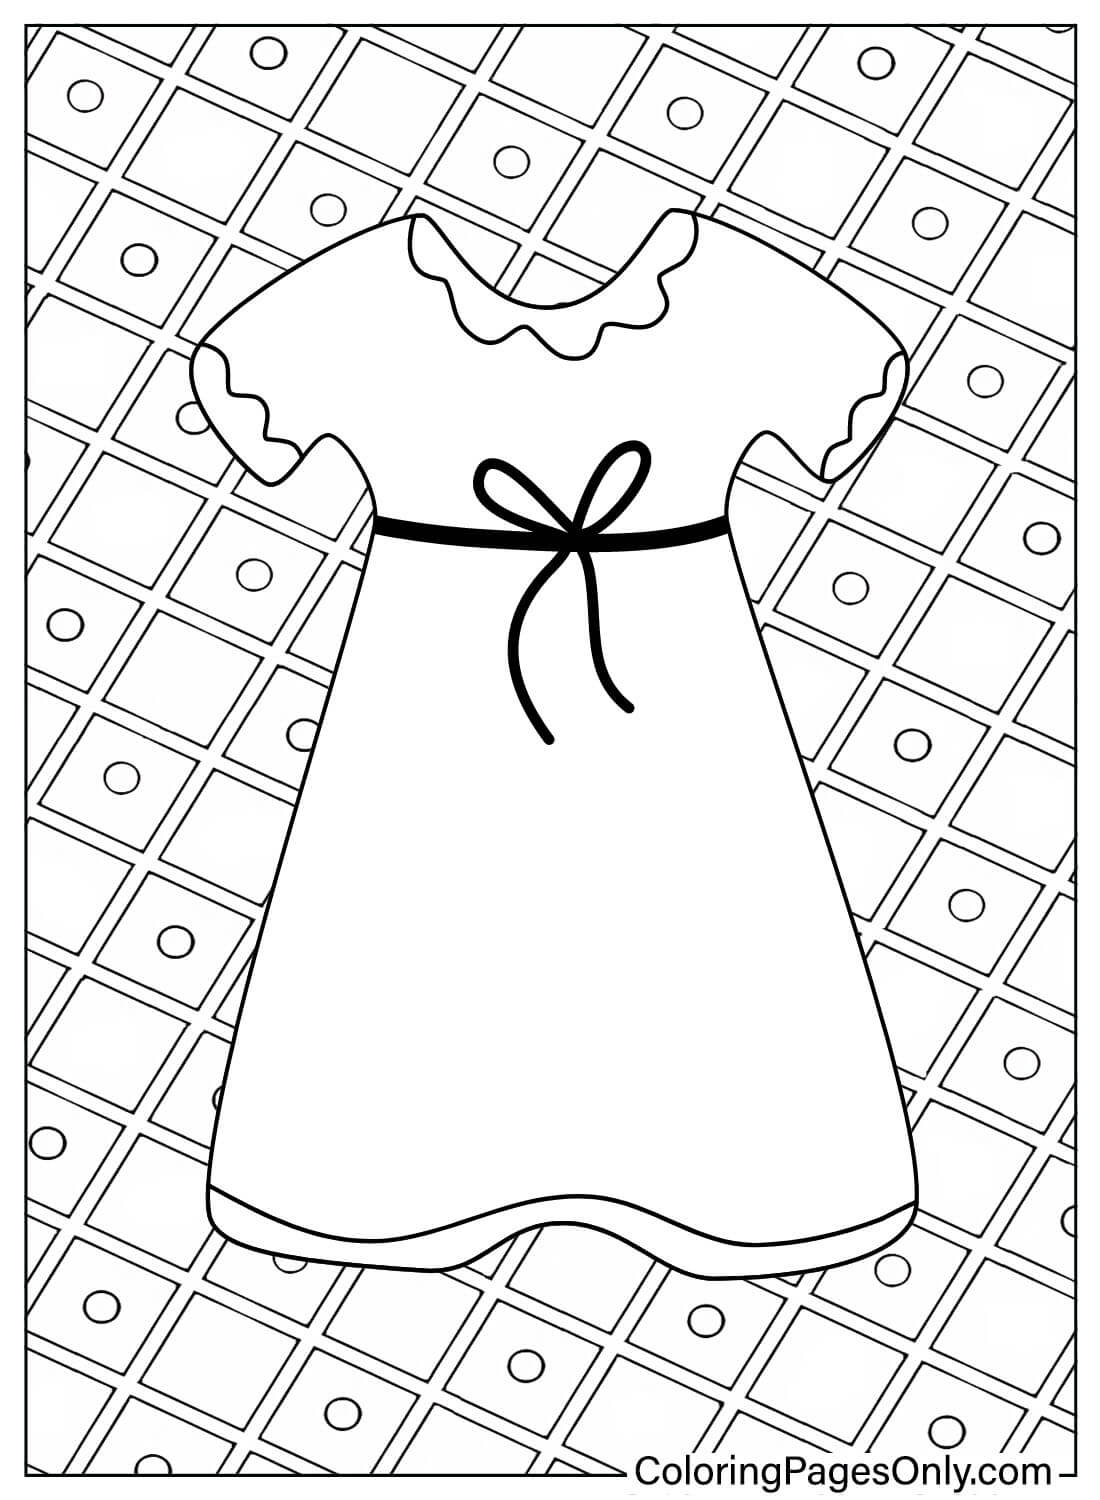 Página para colorear de vestido de bebé imprimible de Vestido de bebé